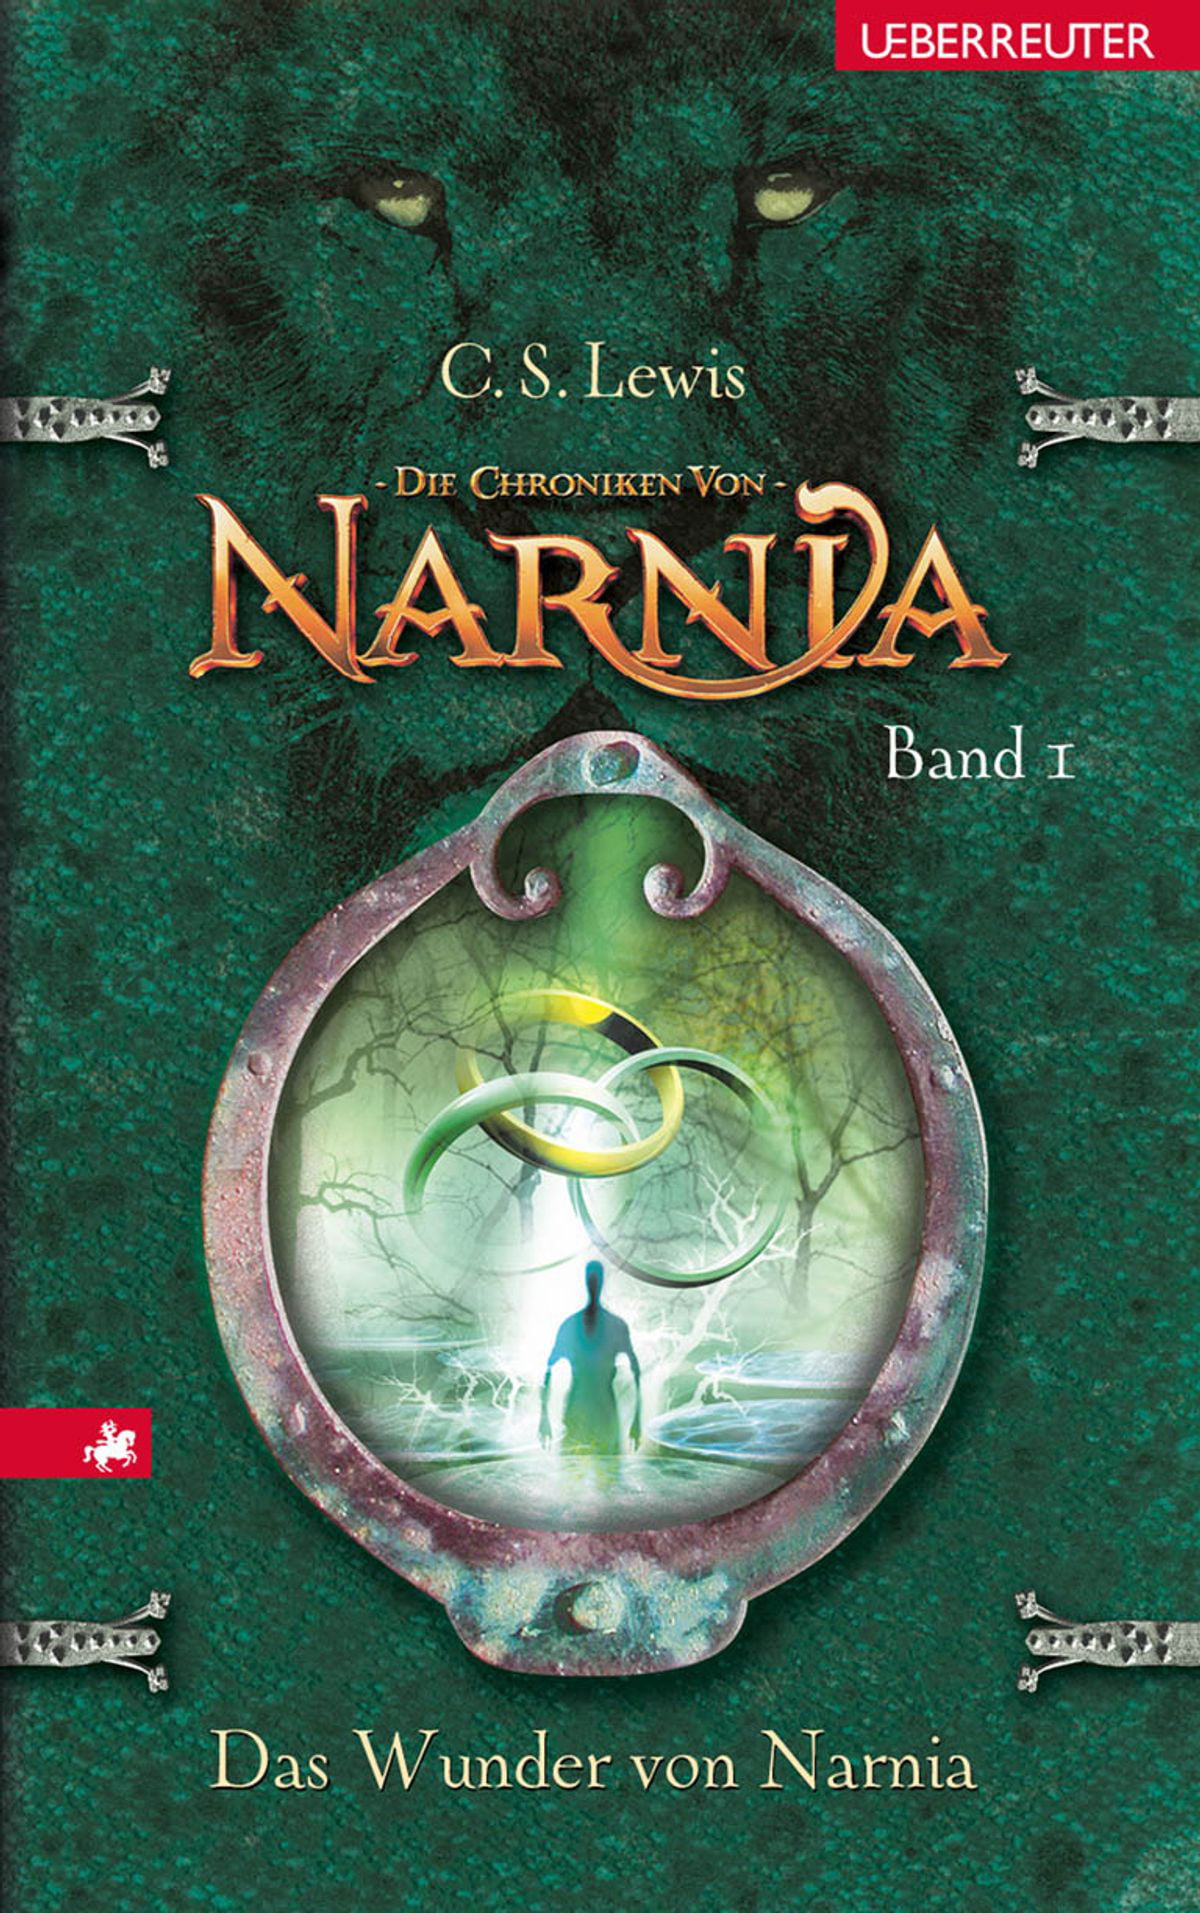 Das-Wunder-von-Narnia-Die-Chroniken-von-Narnia-Bd-1